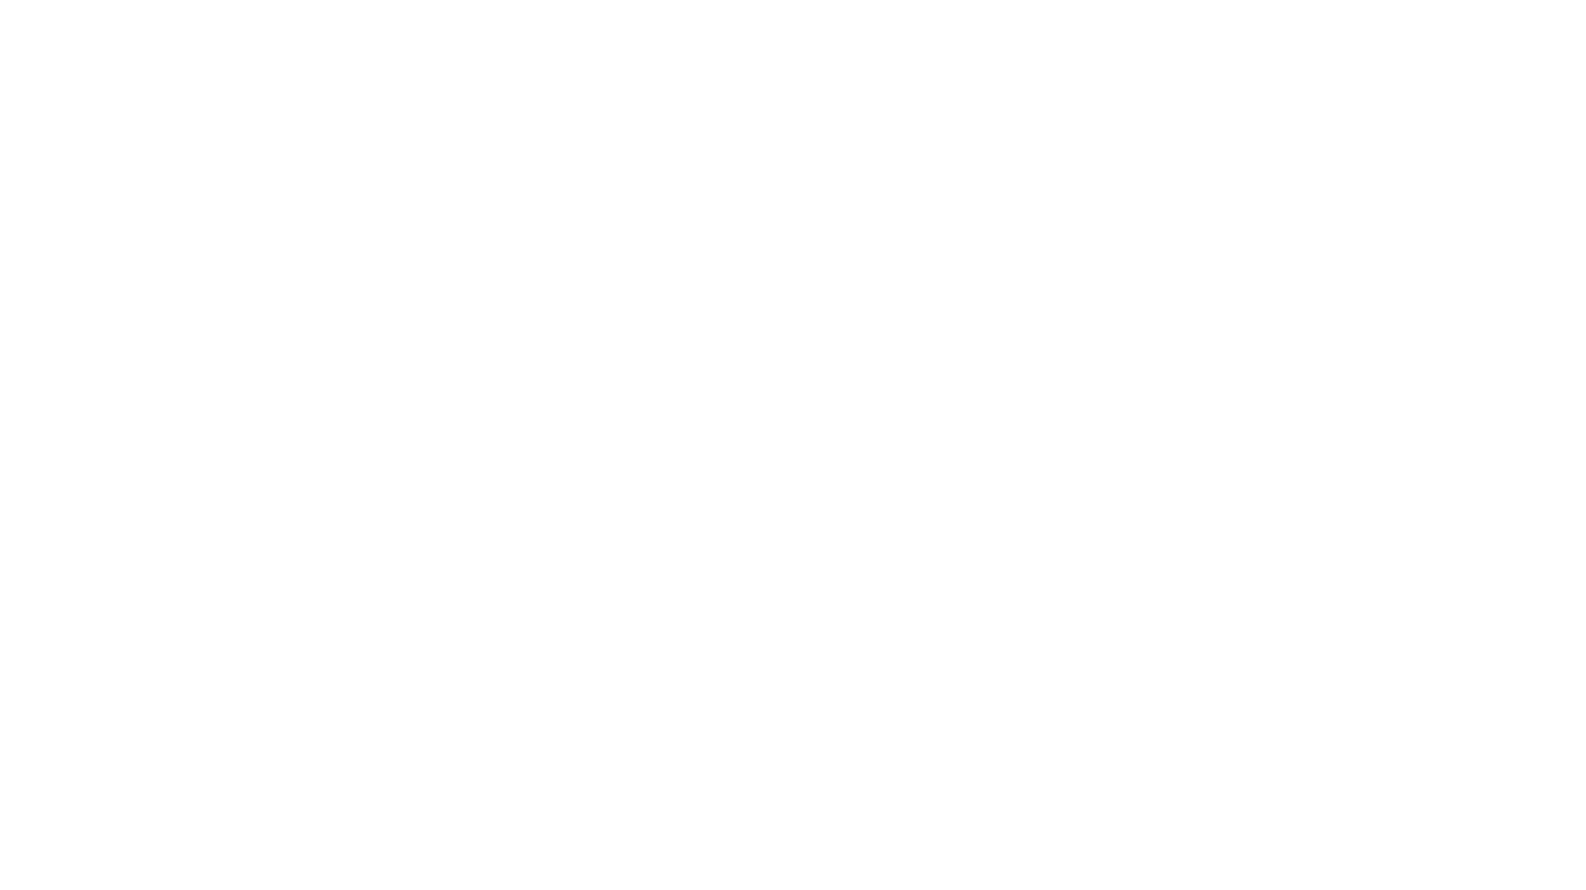 Brand New: New Logos for HUGO BOSS, HUGO, and BOSS